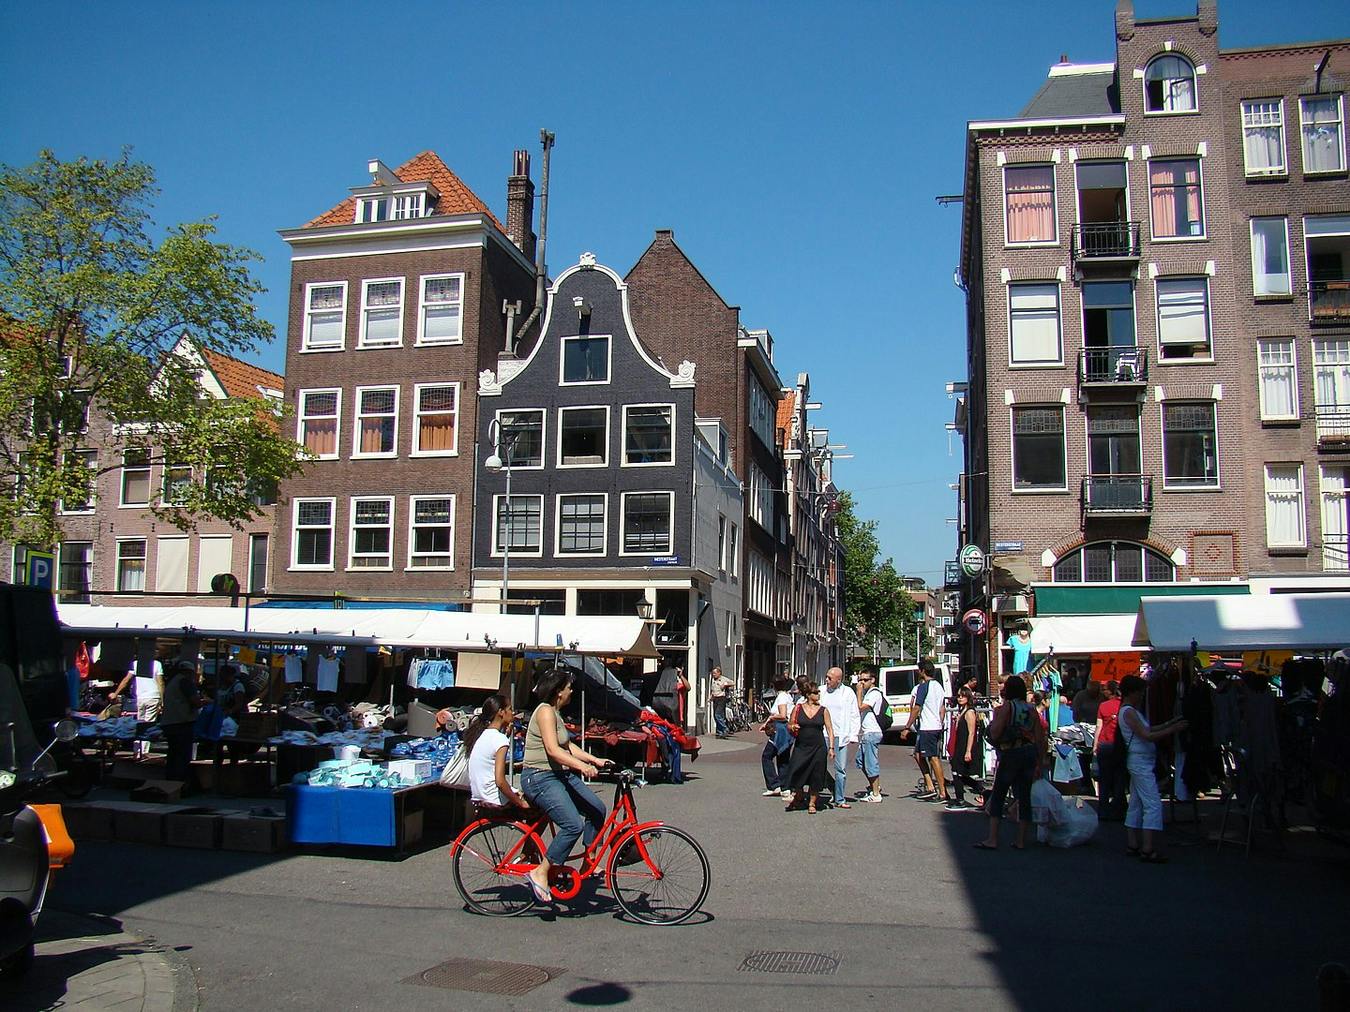 Parada de ropa en el mercado de Westerstraat Markt